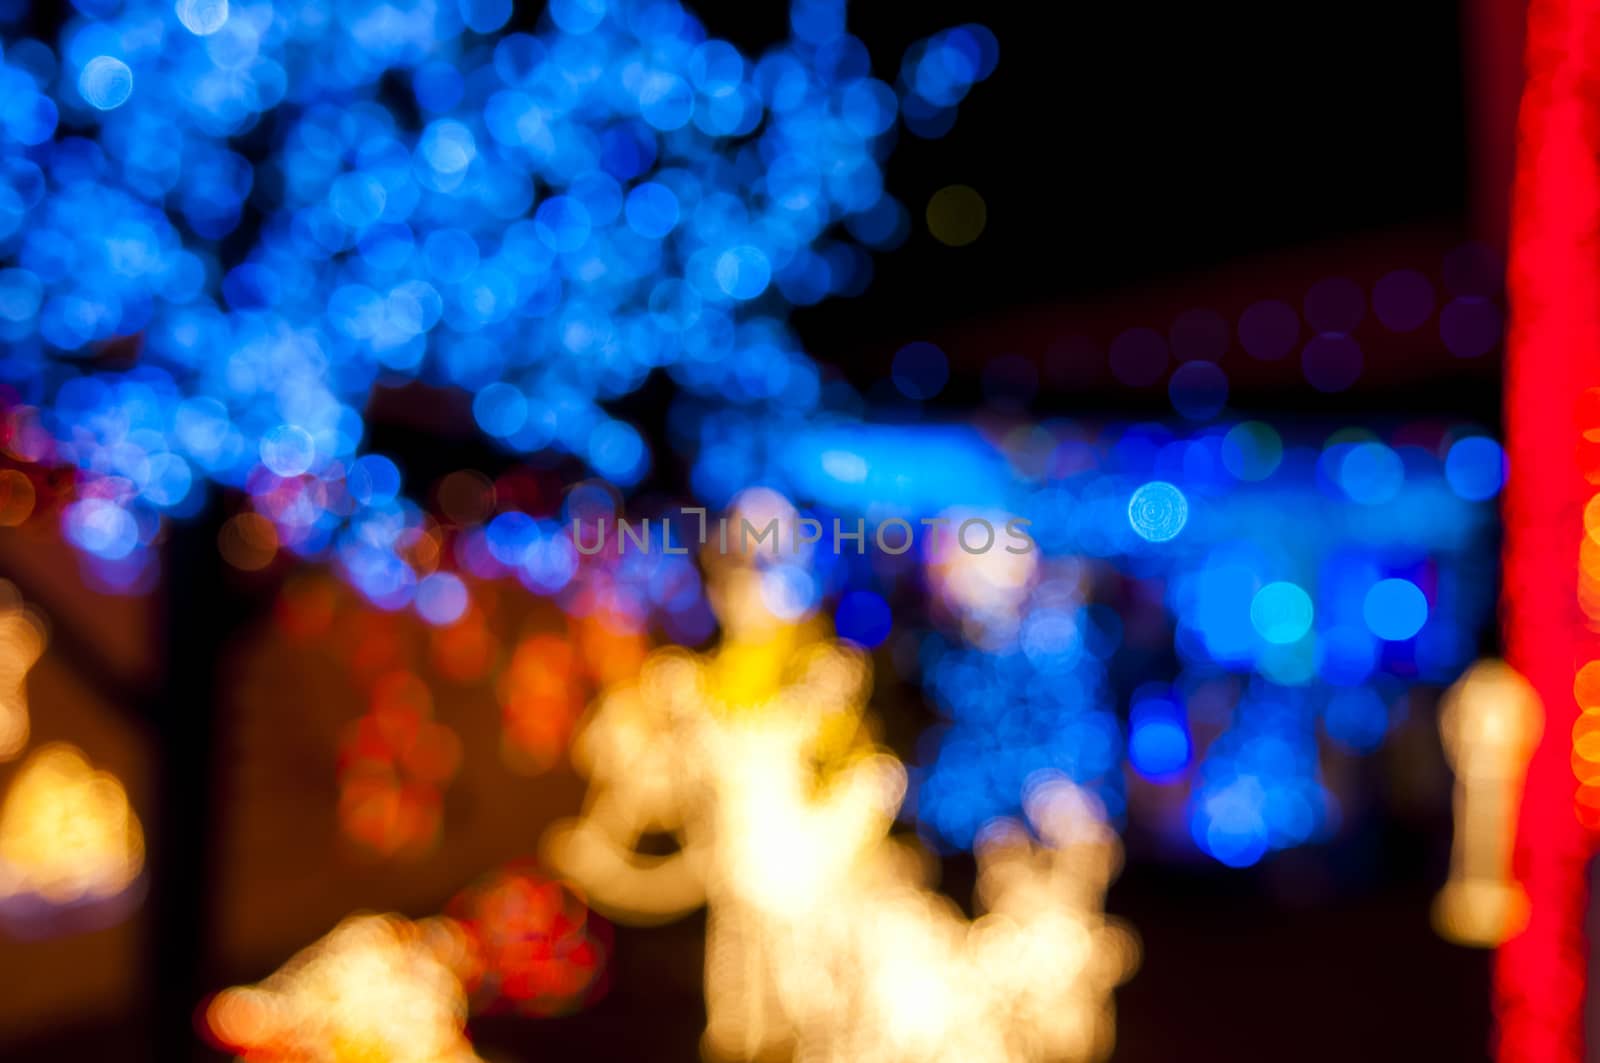 Blury christmas lights by vangelis